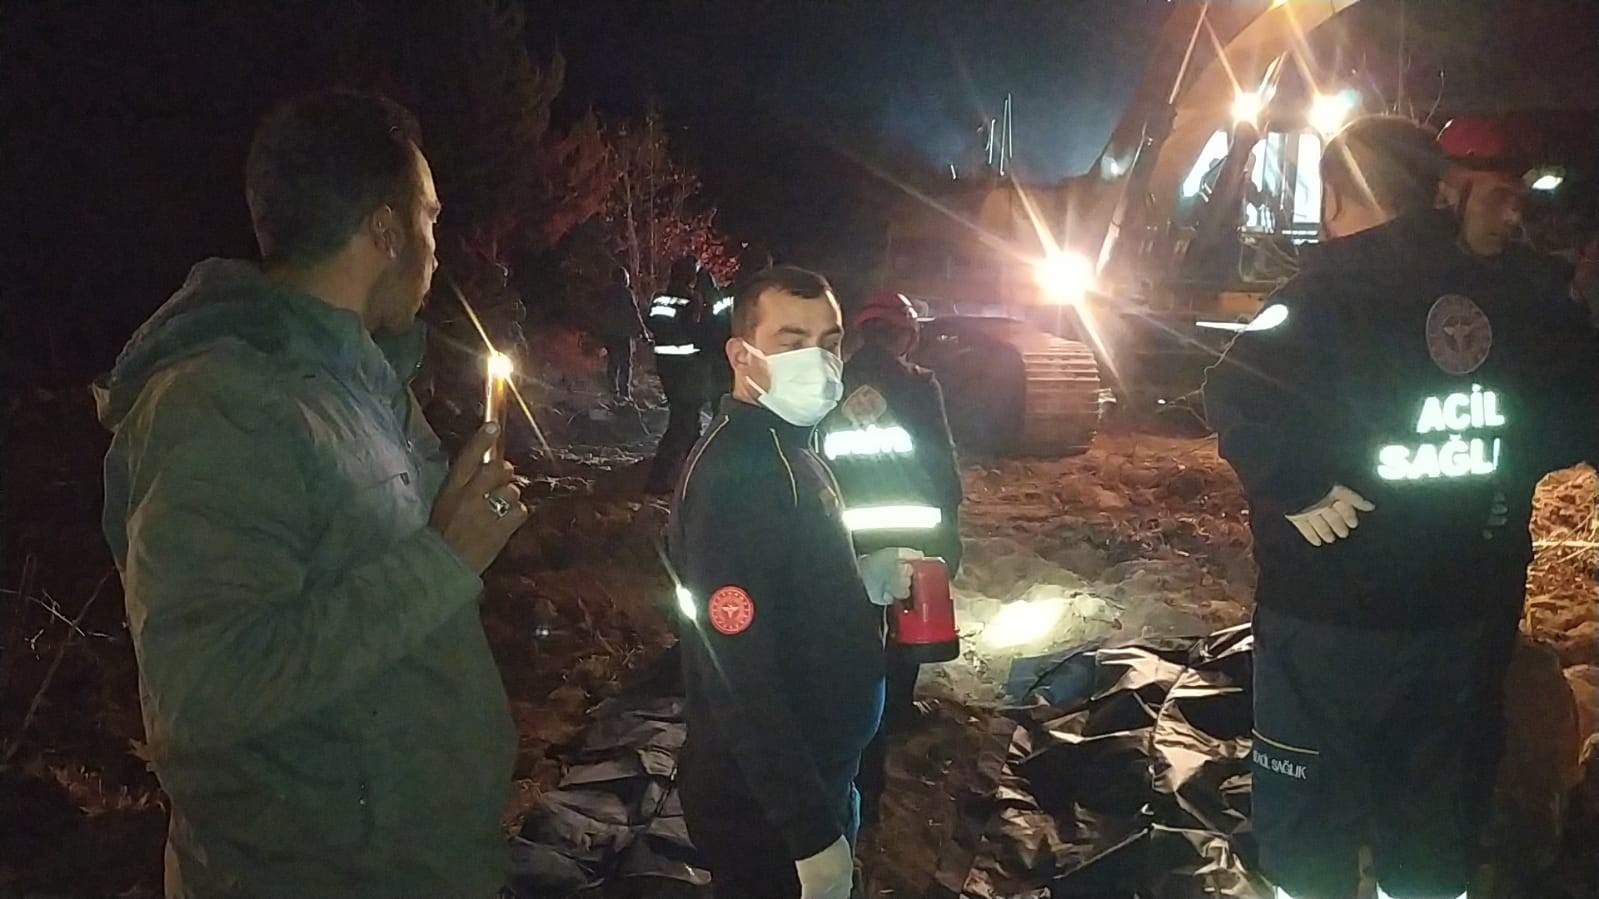 Kamyon yükünü boşaltırken uçuruma yuvarlandı: 2 ölü #kahramanmaras